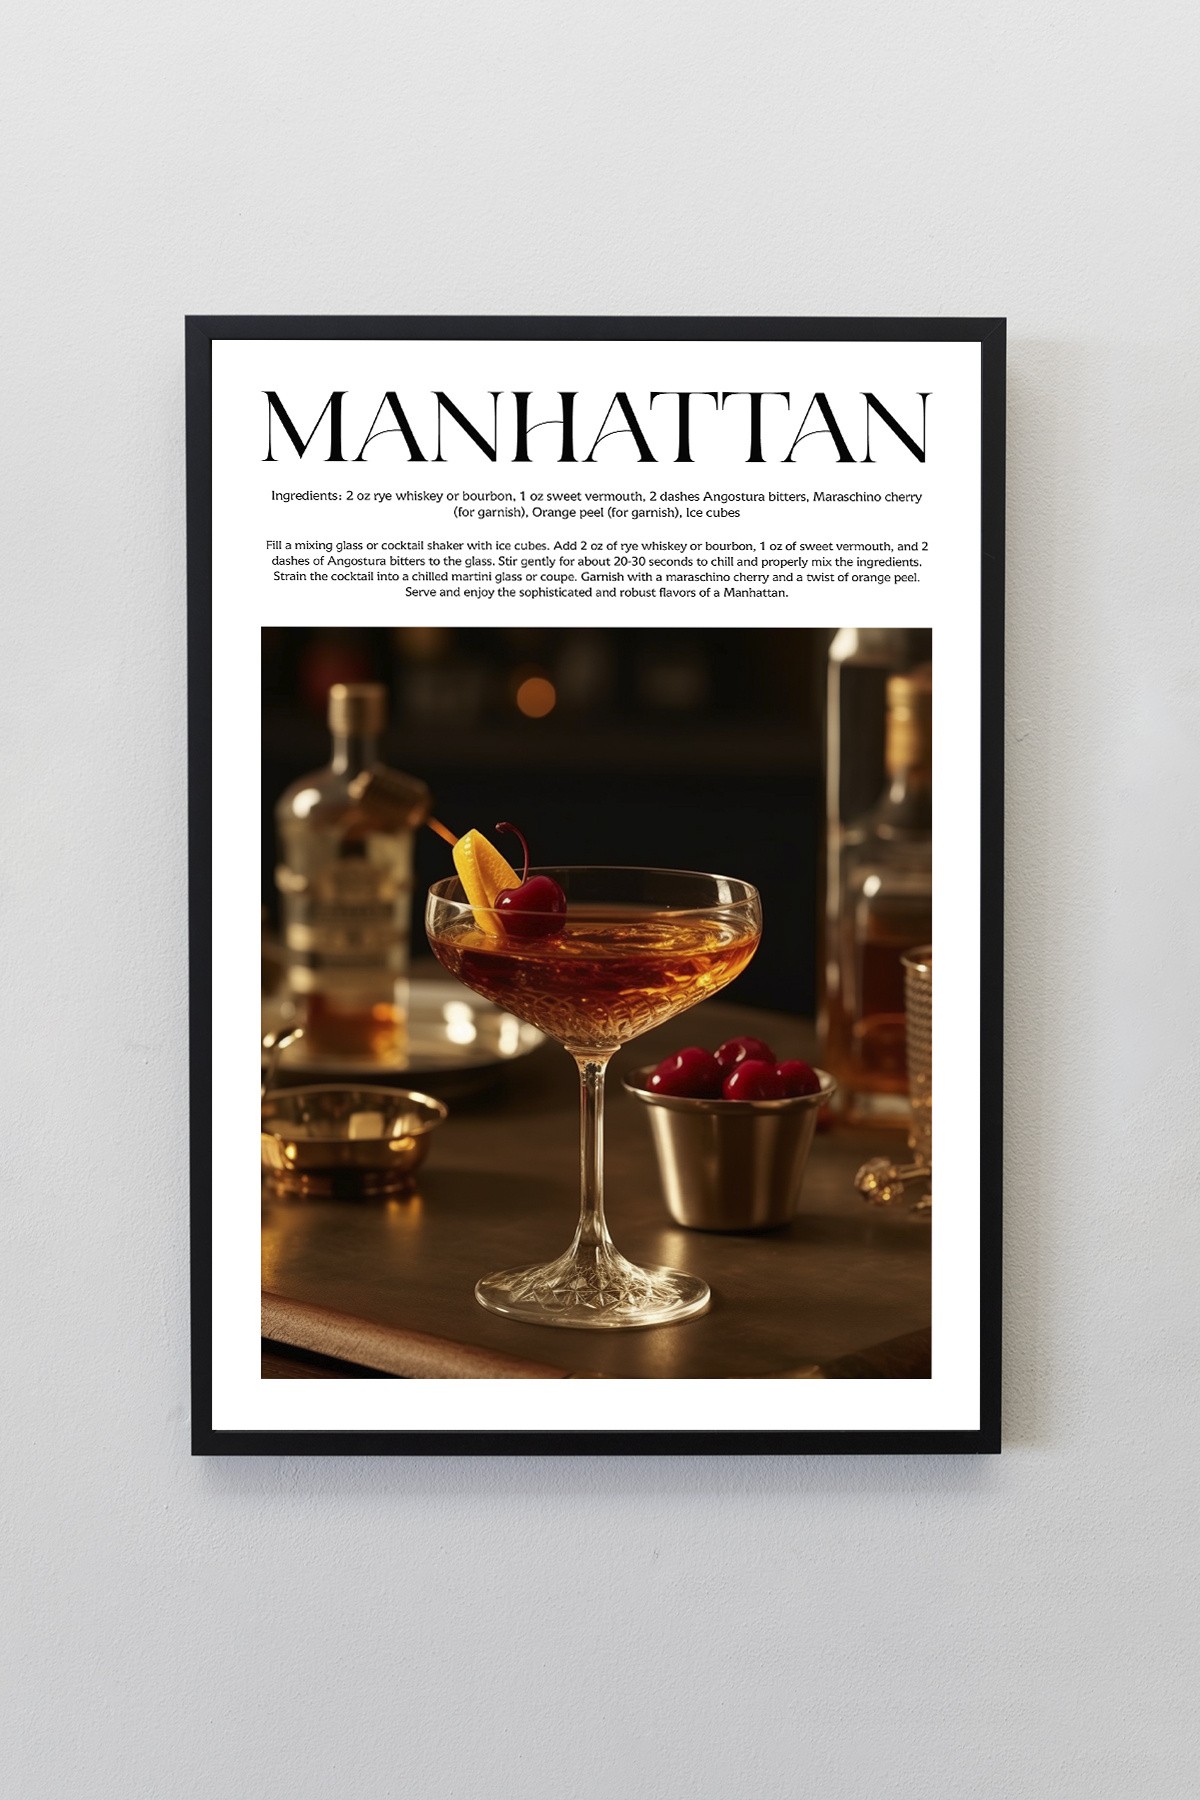 Manhattan Kokteyl Tarifleri Tasarımlı Çerçeveli Poster Tablo